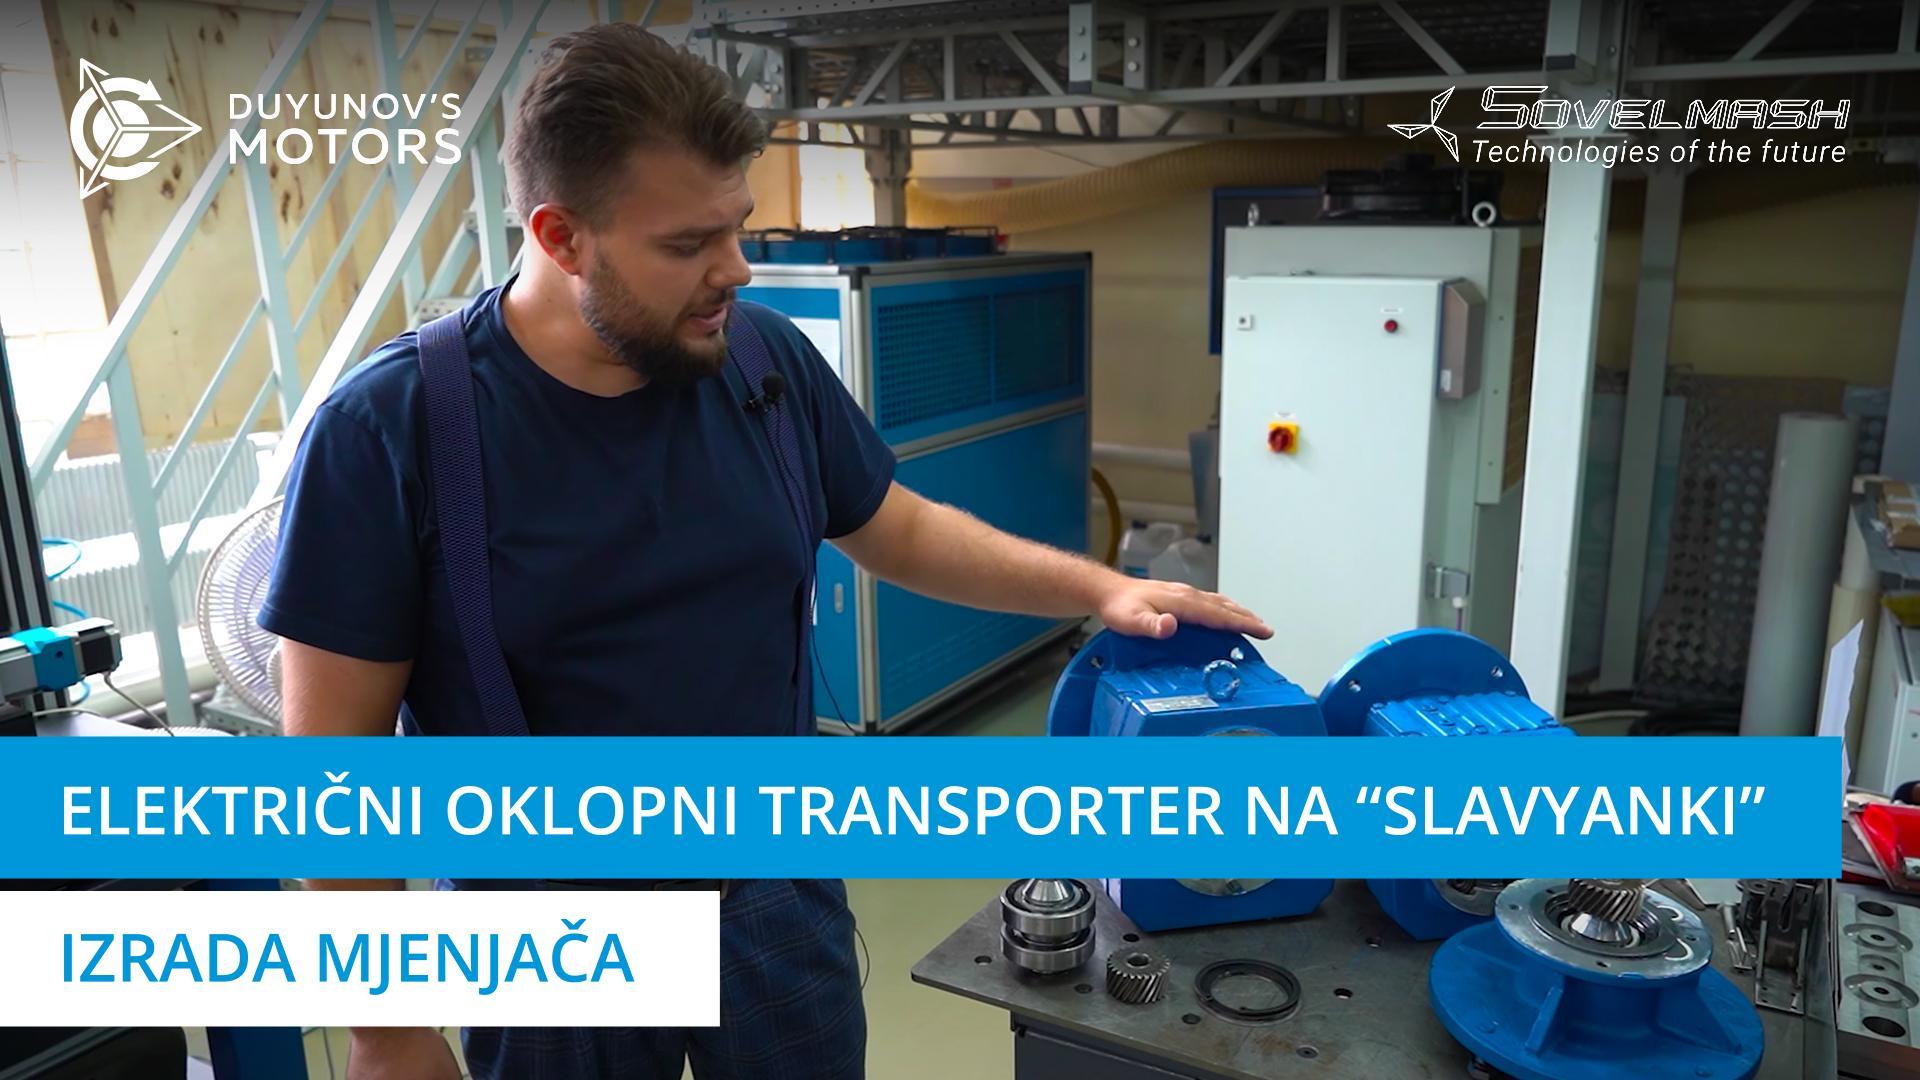 Električni oklopni transporter na "Slavyanki": rad na mjenjačima